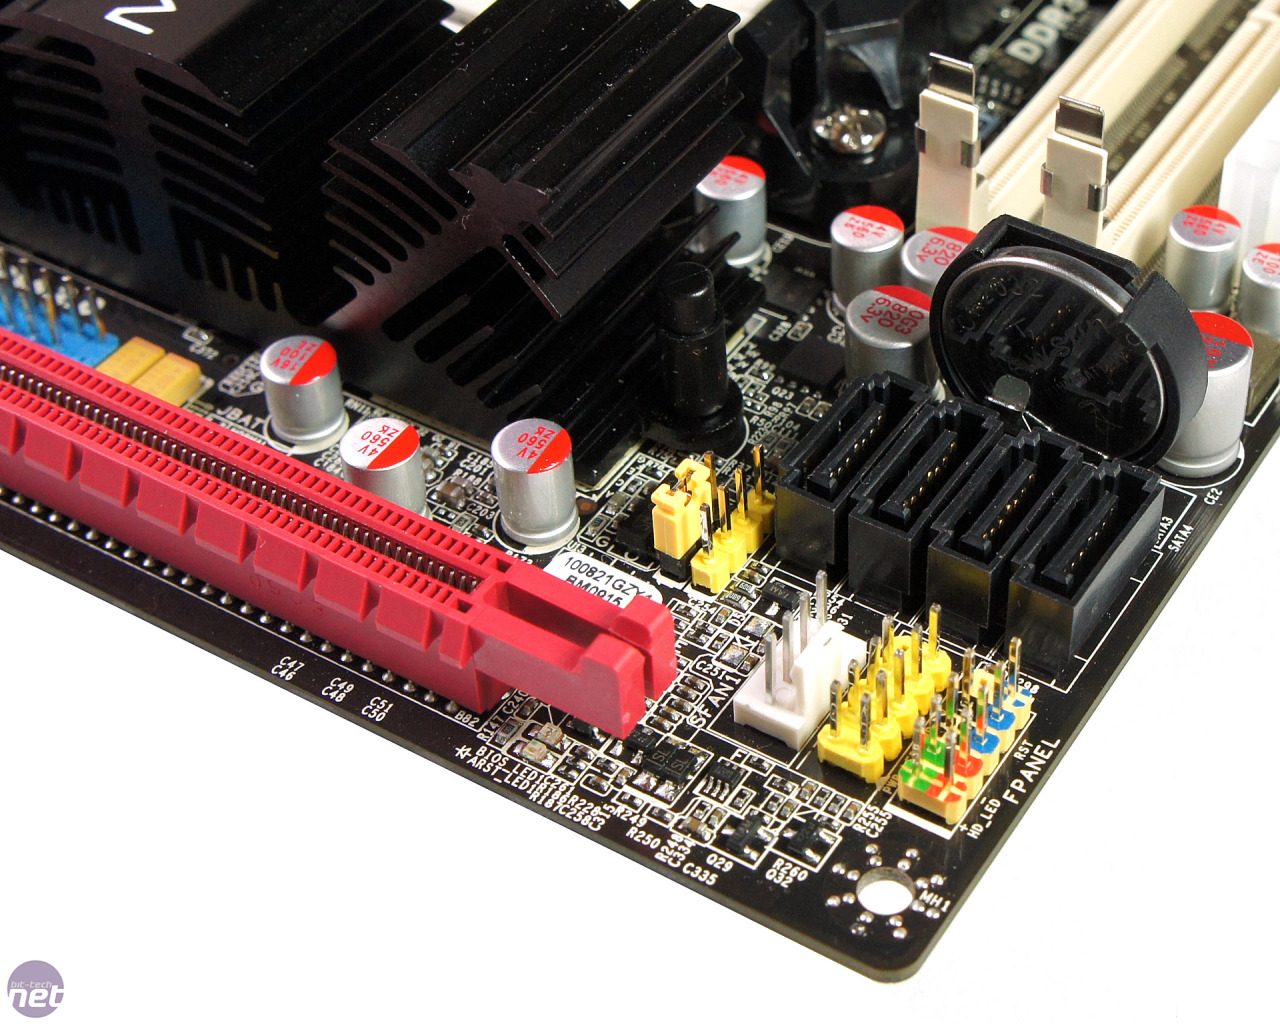 J&W MINIX 890GX-USB3 Mini-ITX (AMD 890GX) Motherboard